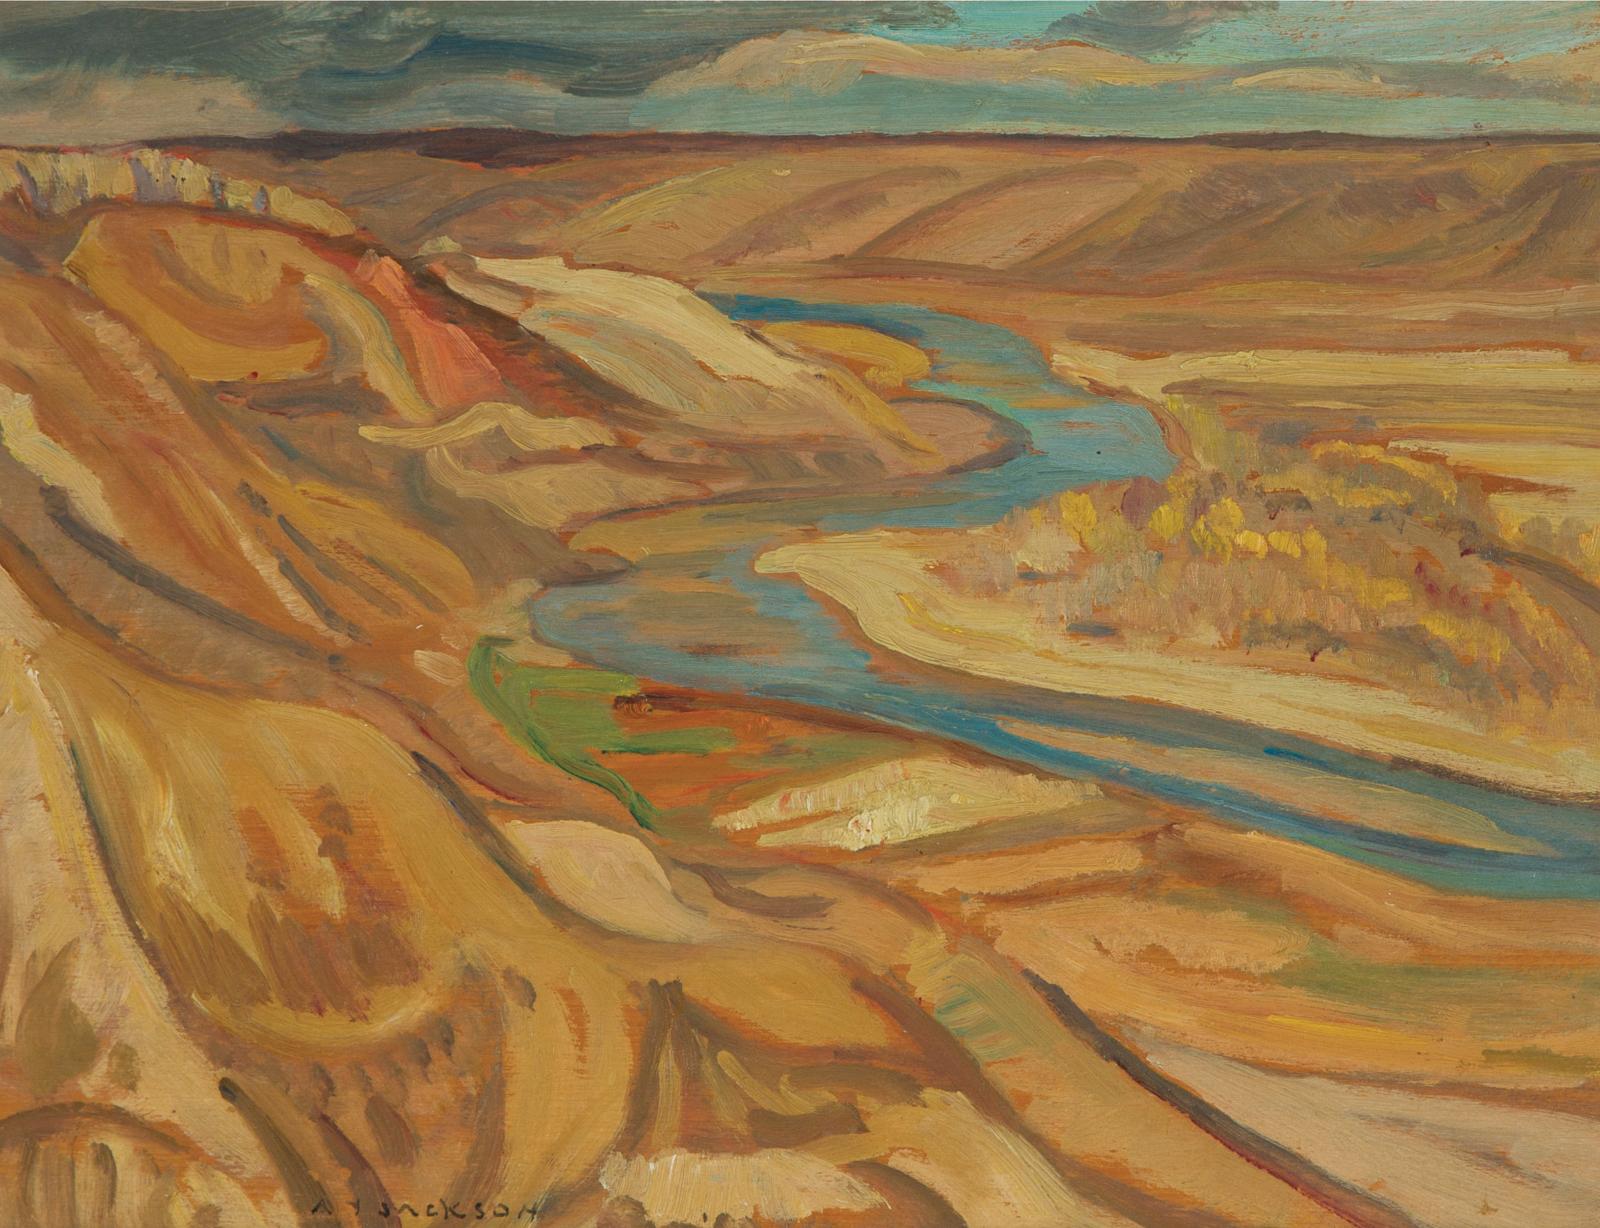 Alexander Young (A. Y.) Jackson (1882-1974) - Old Man River, Alberta